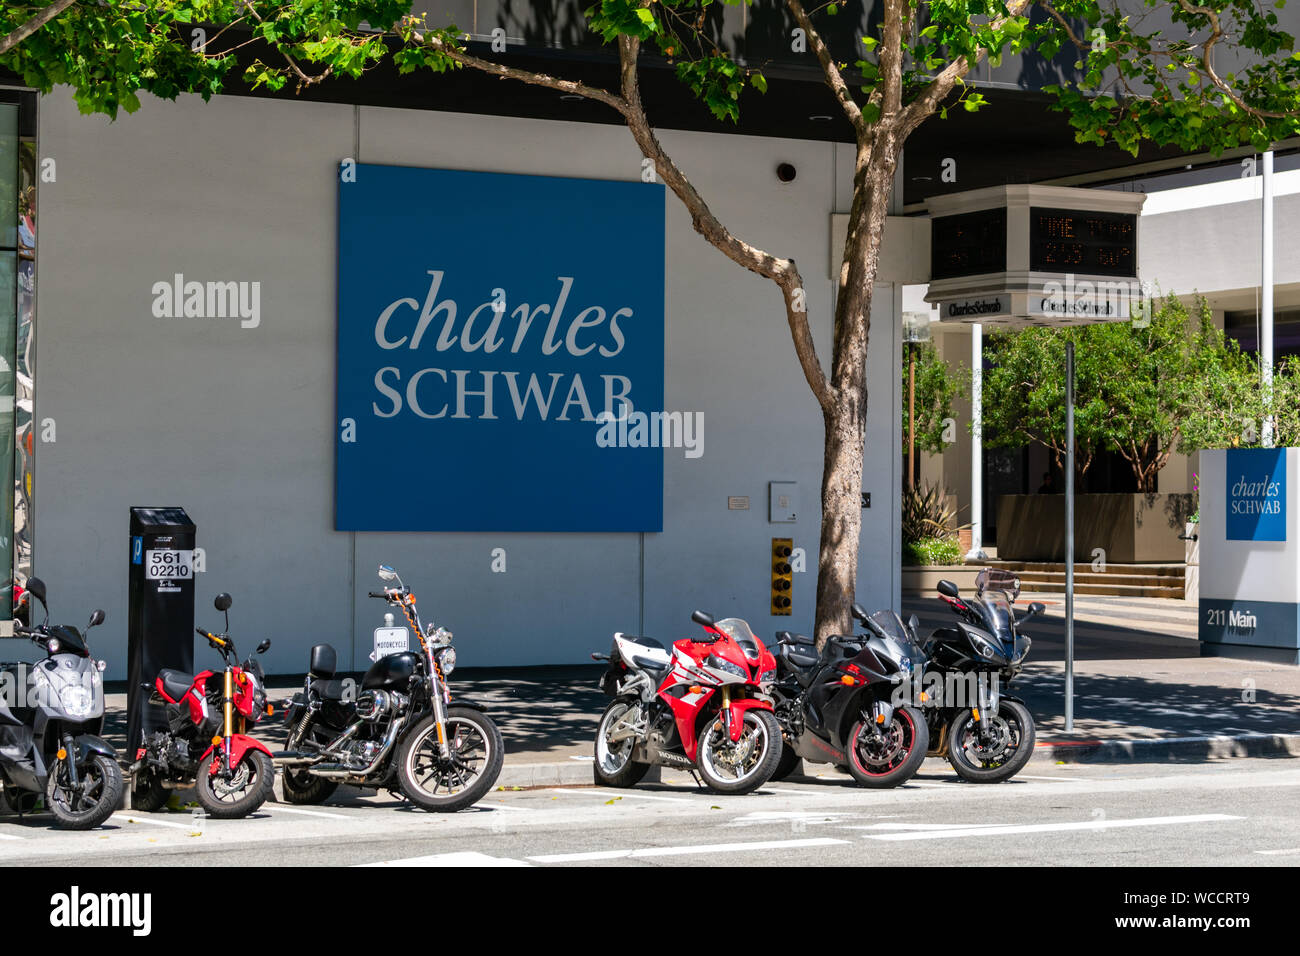 Charles Schwab Schild in der Nähe Financial Investment Management Firmensitz. Geparkte Motorräder Stockfoto